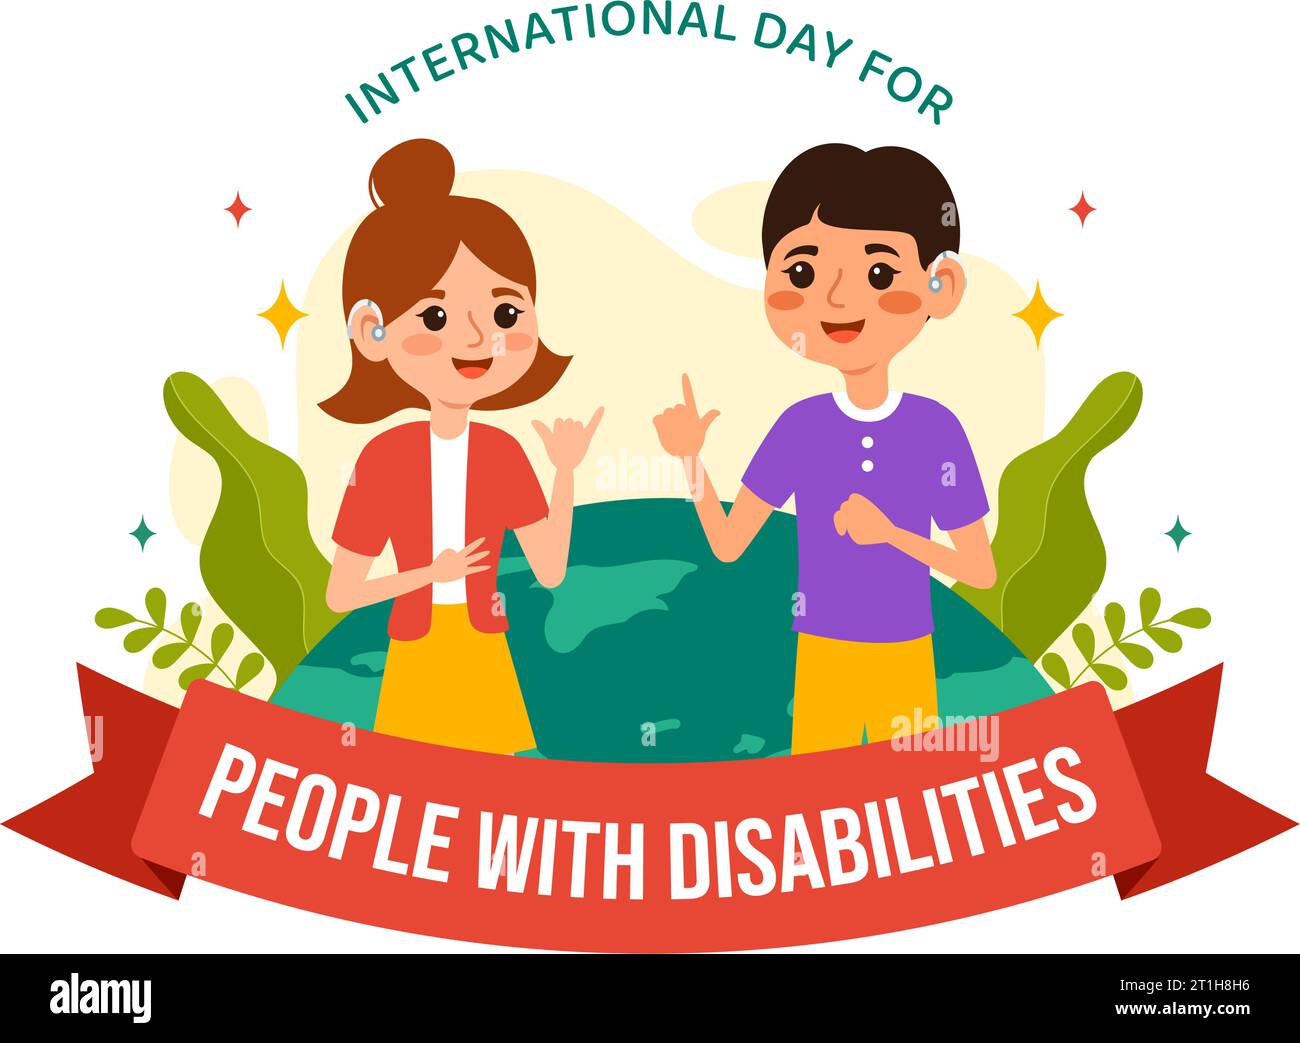 Journée internationale pour les personnes handicapées Illustration de conception vectorielle le 3 décembre pour sensibiliser à la situation des personnes handicapées Illustration de Vecteur